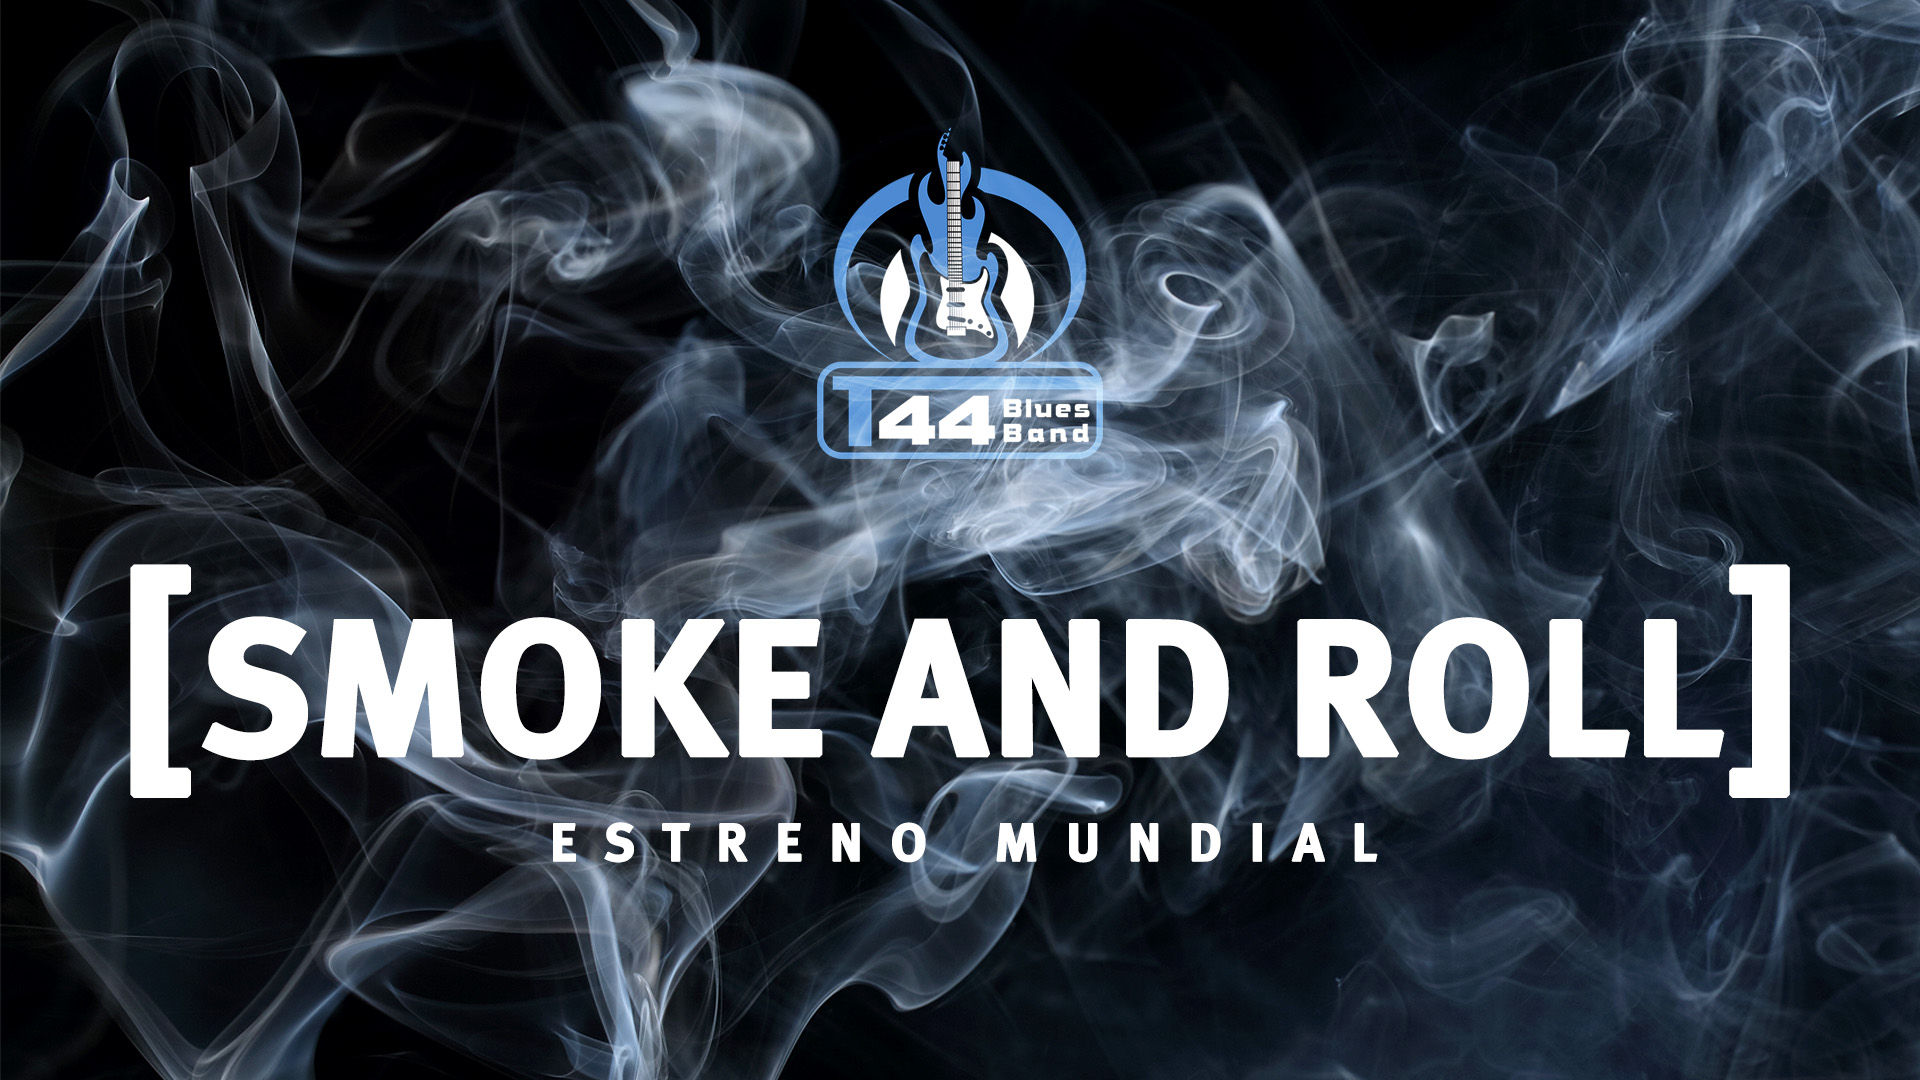 La banda regiomontana T44 BLUES BAND presenta el primer sencillo de su producción discográfica homónima #SmokeAndRoll